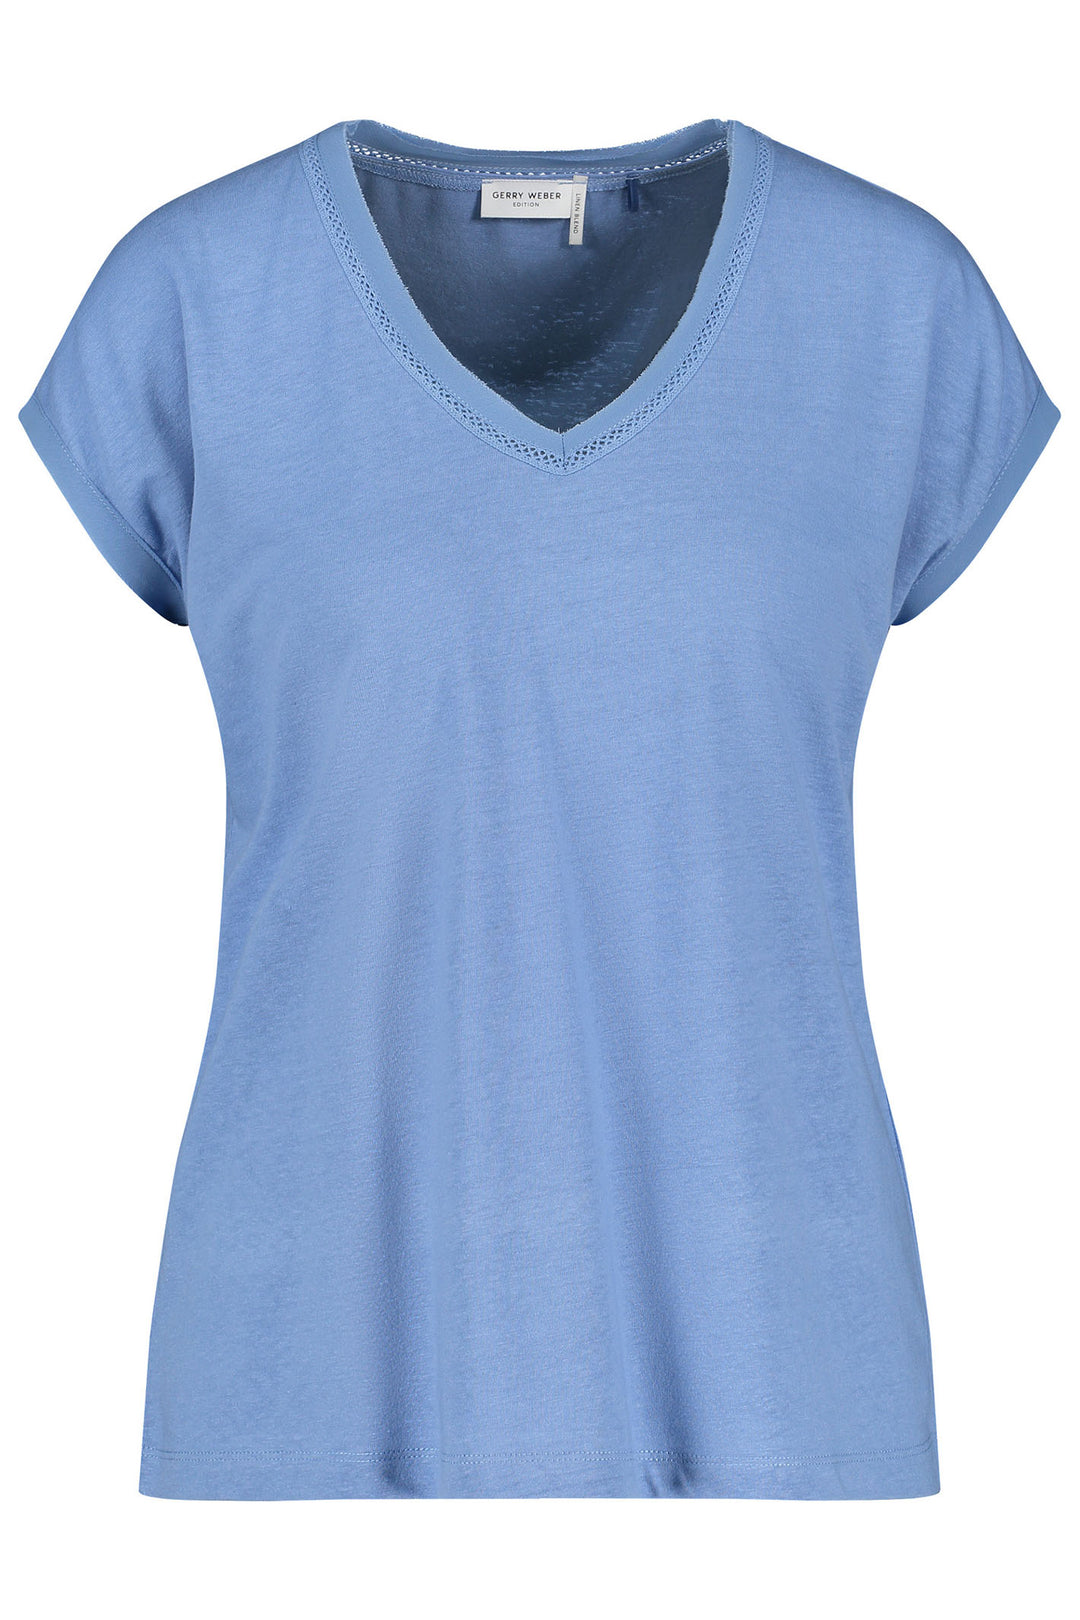 Gerry Weber 270092 Blue Hazy Sky V-Neck T-Shirt - Experience Boutique